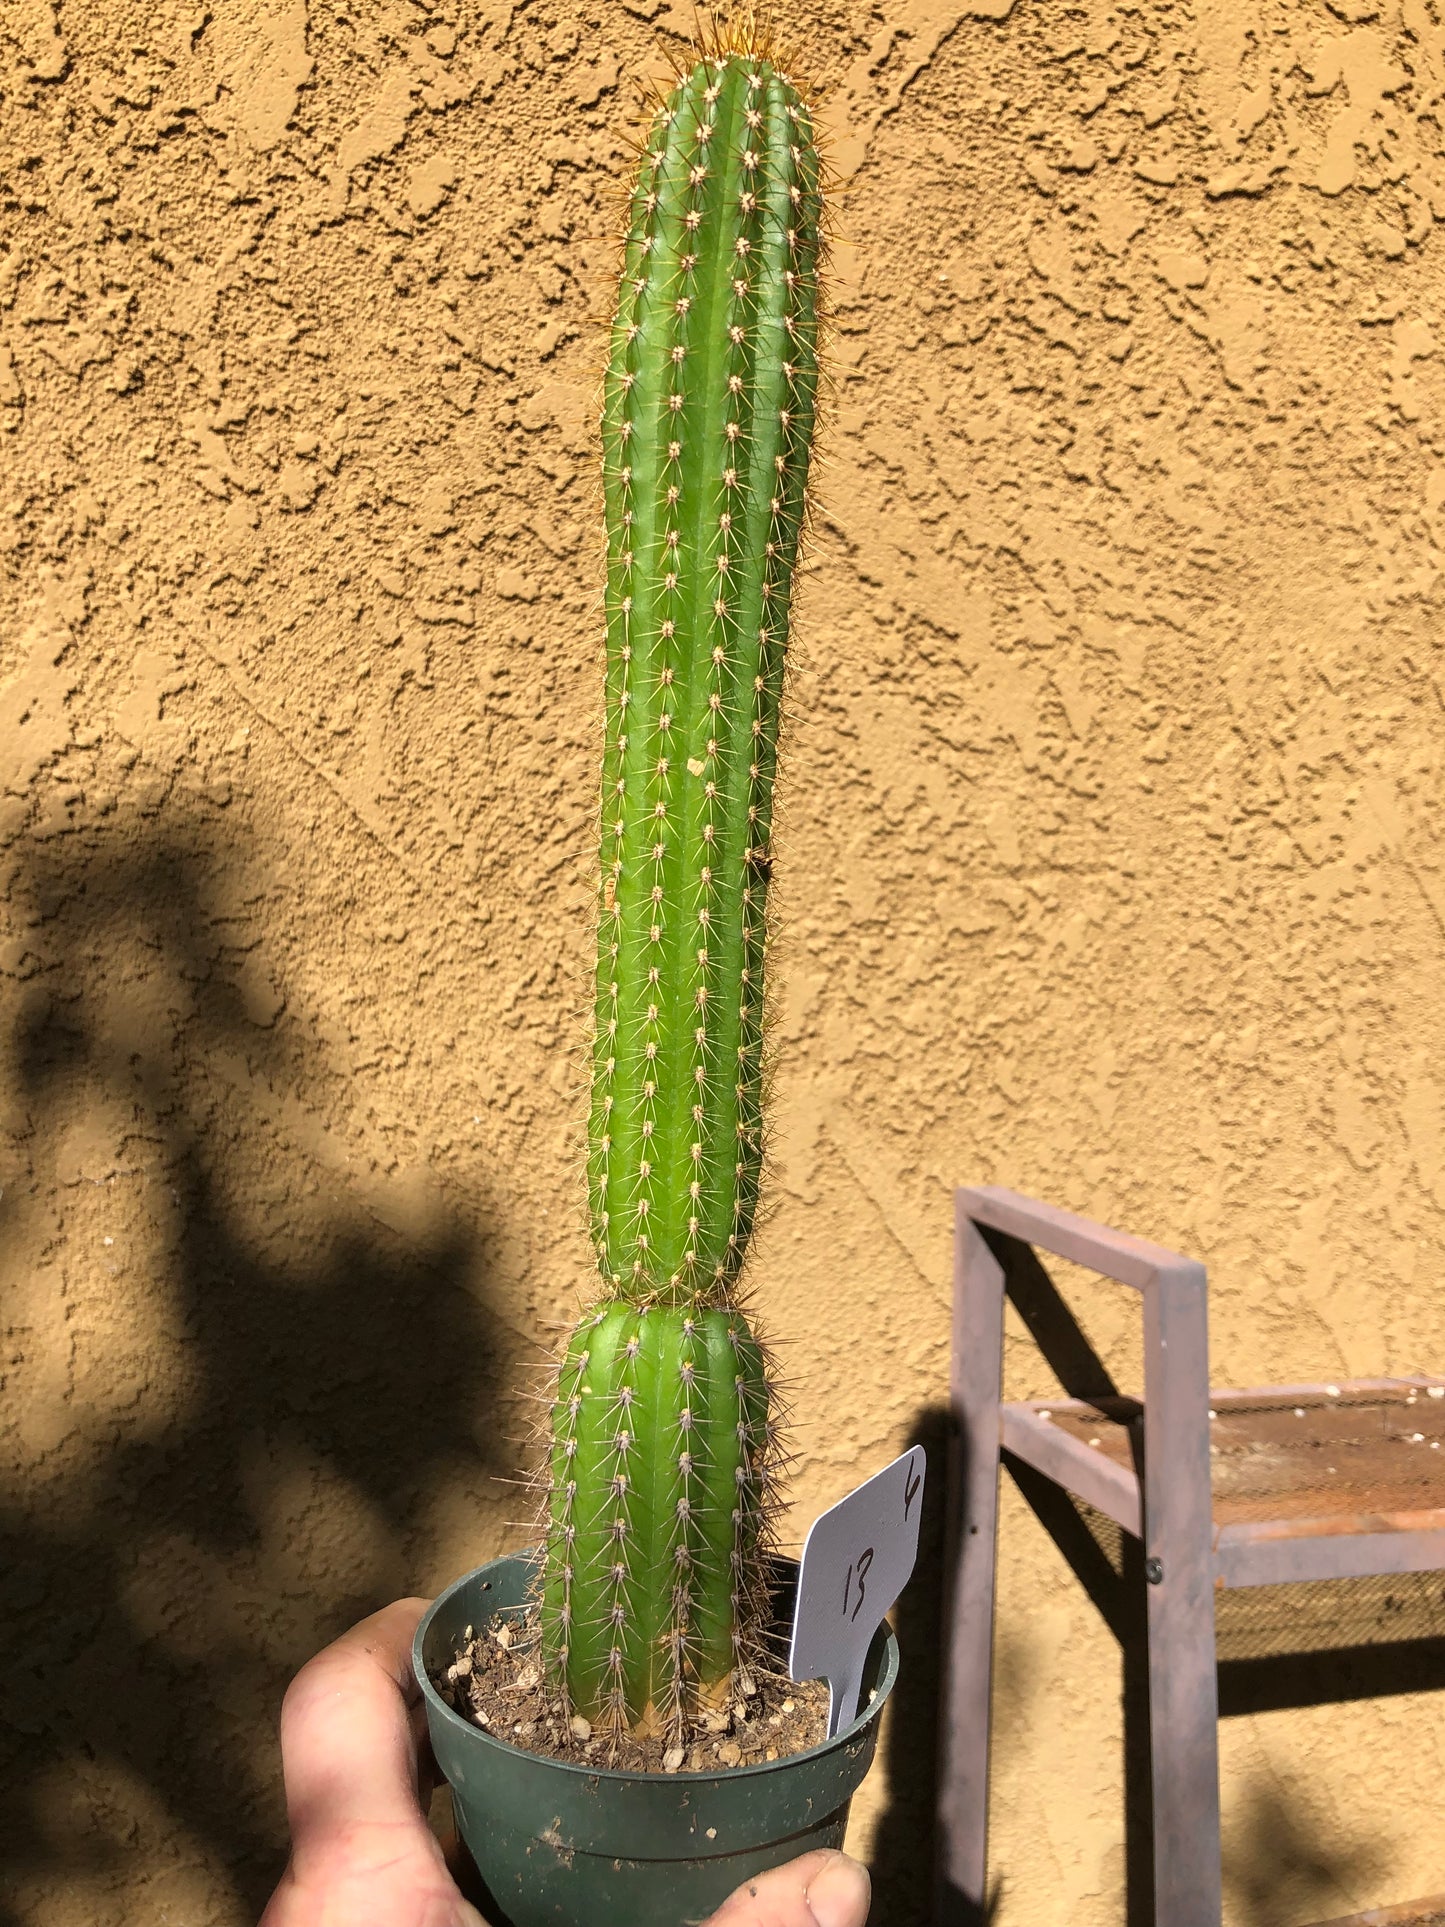 Golden Torch Cactus - Trichocereus spachianus 13" Tall #6W